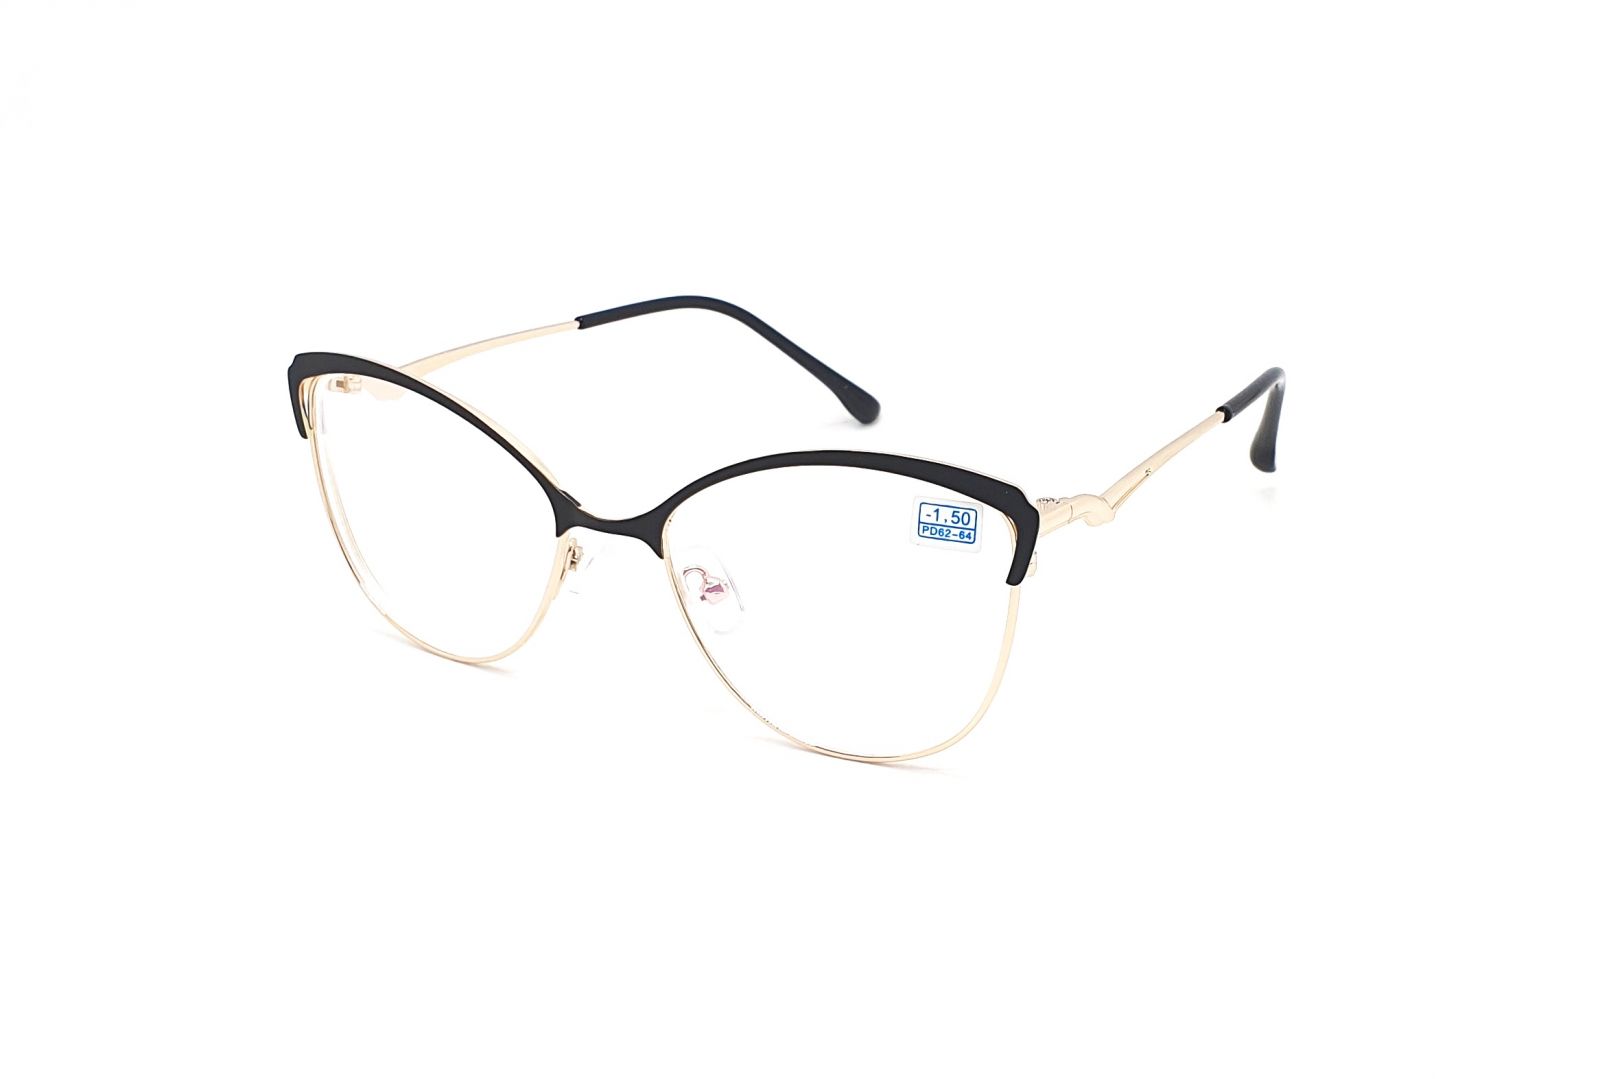 Dioptrické brýle 850 / -2,00 black/gold s antireflexní vrstvou